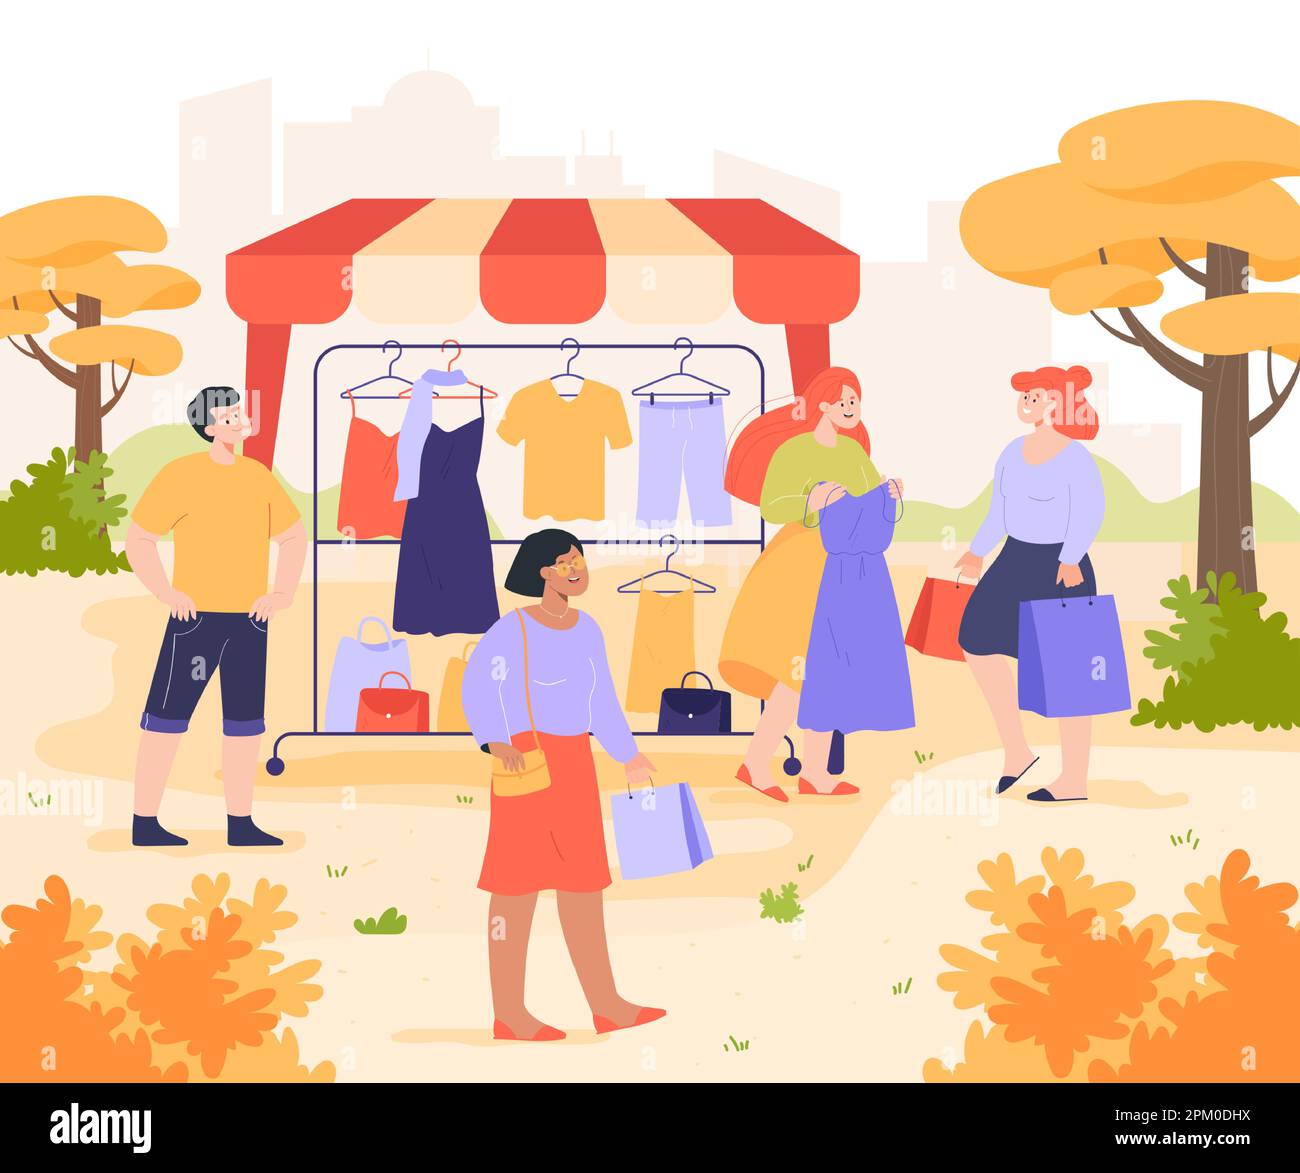 Caricature les gens achètent des vêtements dans une boutique ou un stand en plein air Illustration de Vecteur